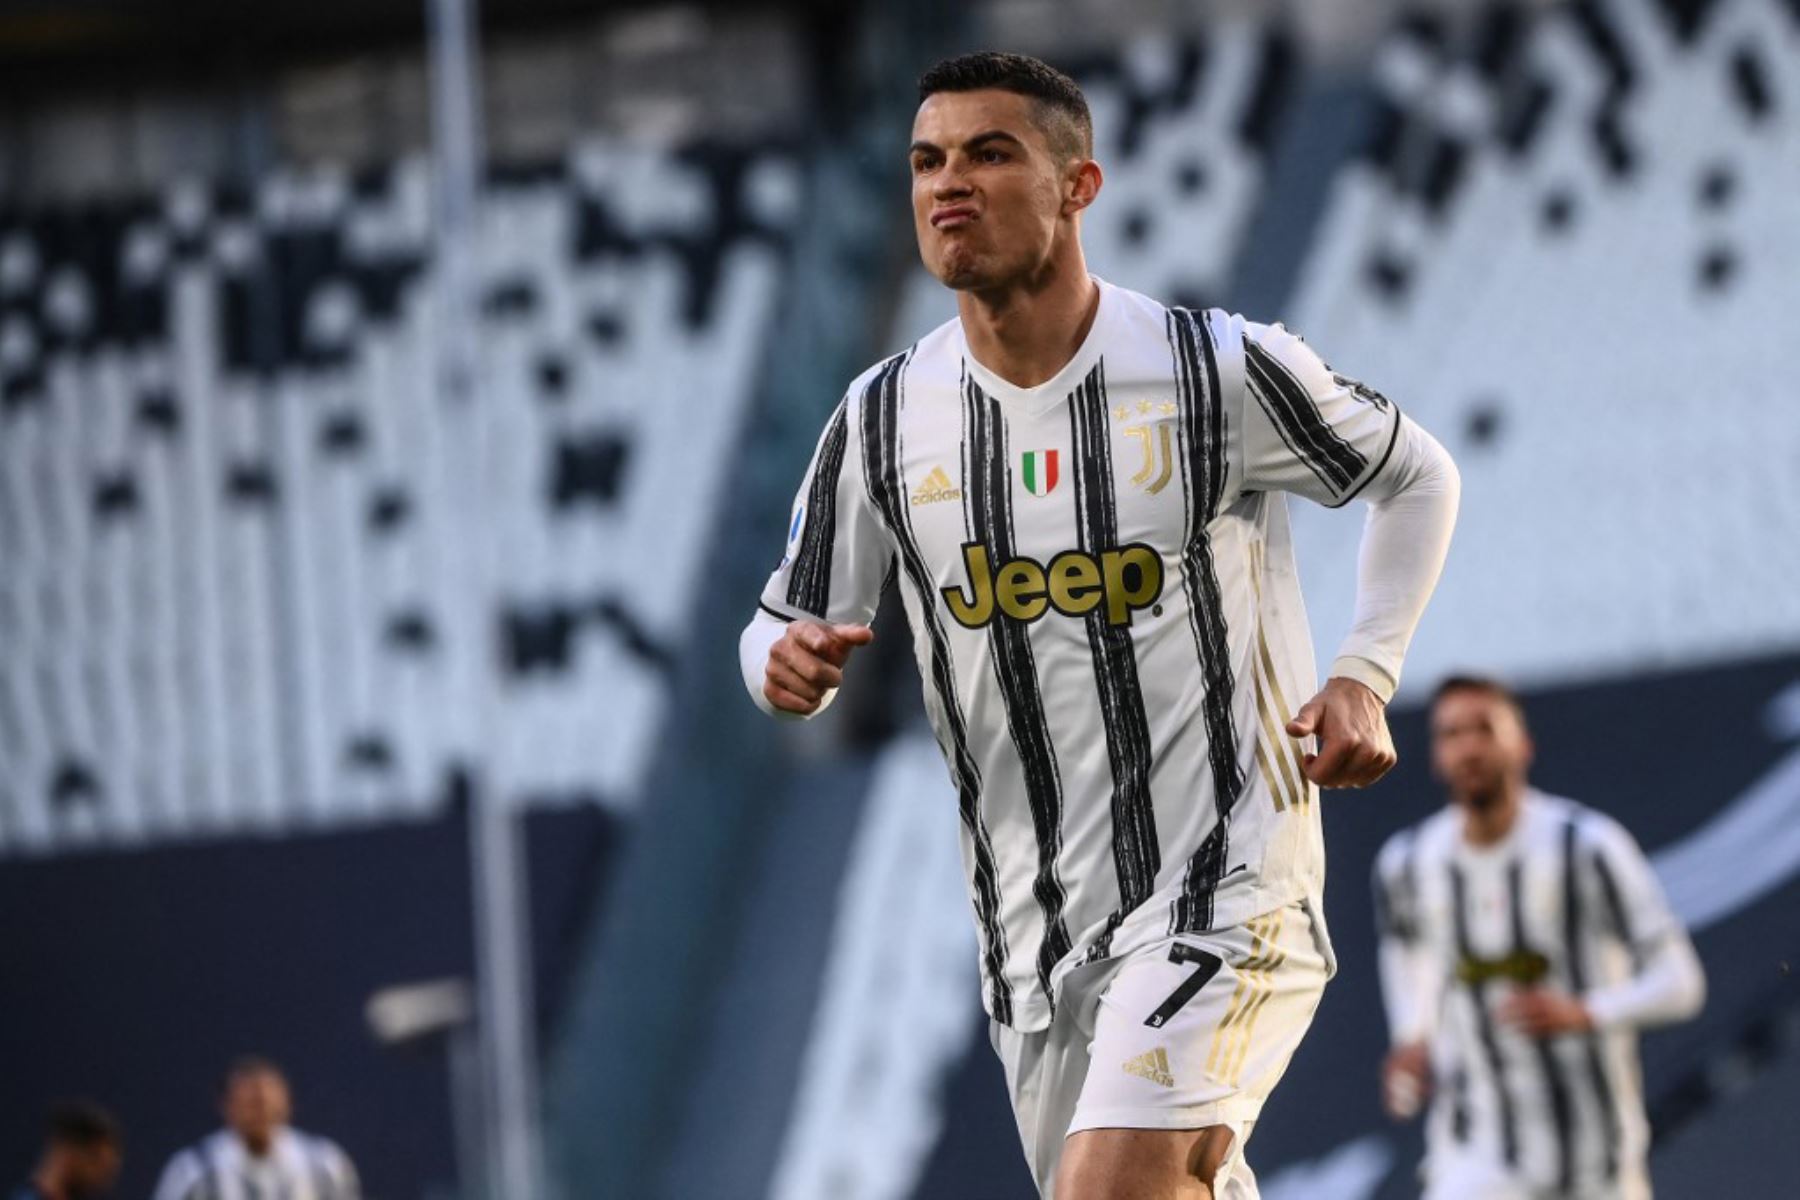 El delantero portugués de la Juventus, Cristiano Ronaldo, celebra tras abrir el marcador durante el partido de fútbol de la Serie A italiana Juventus vs Napoli.

Foto: AFP